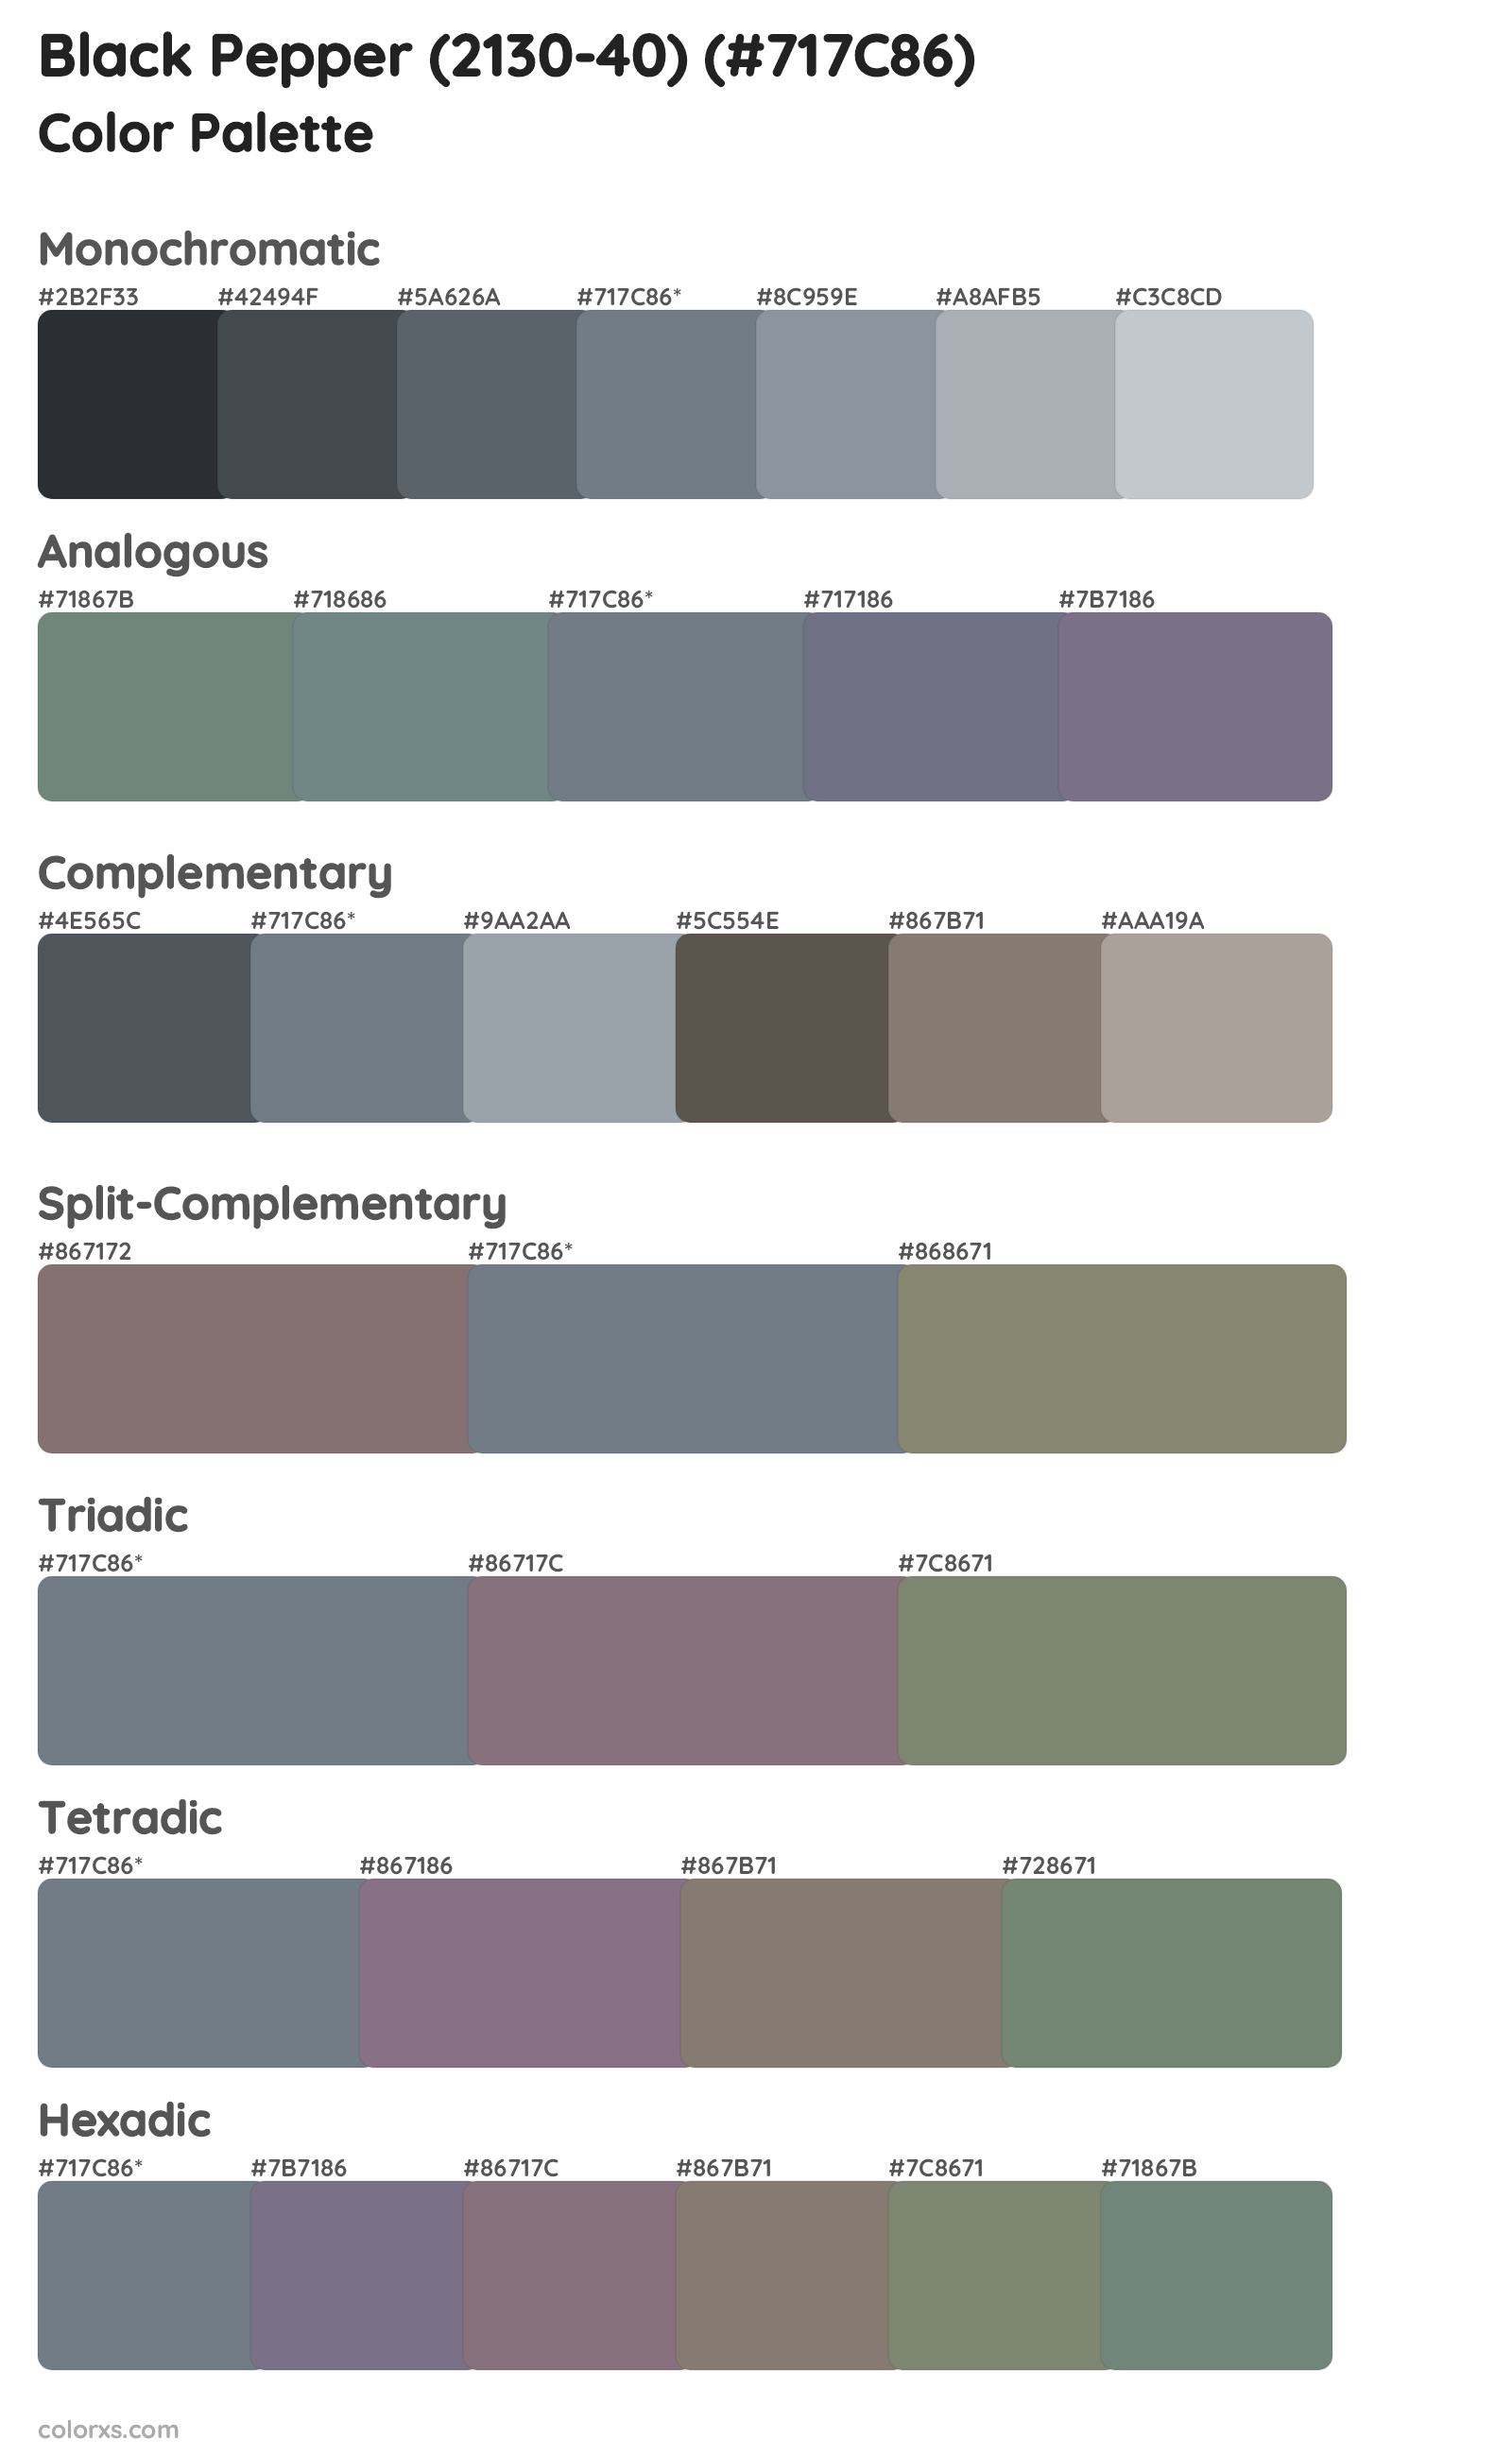 Black Pepper (2130-40) Color Scheme Palettes